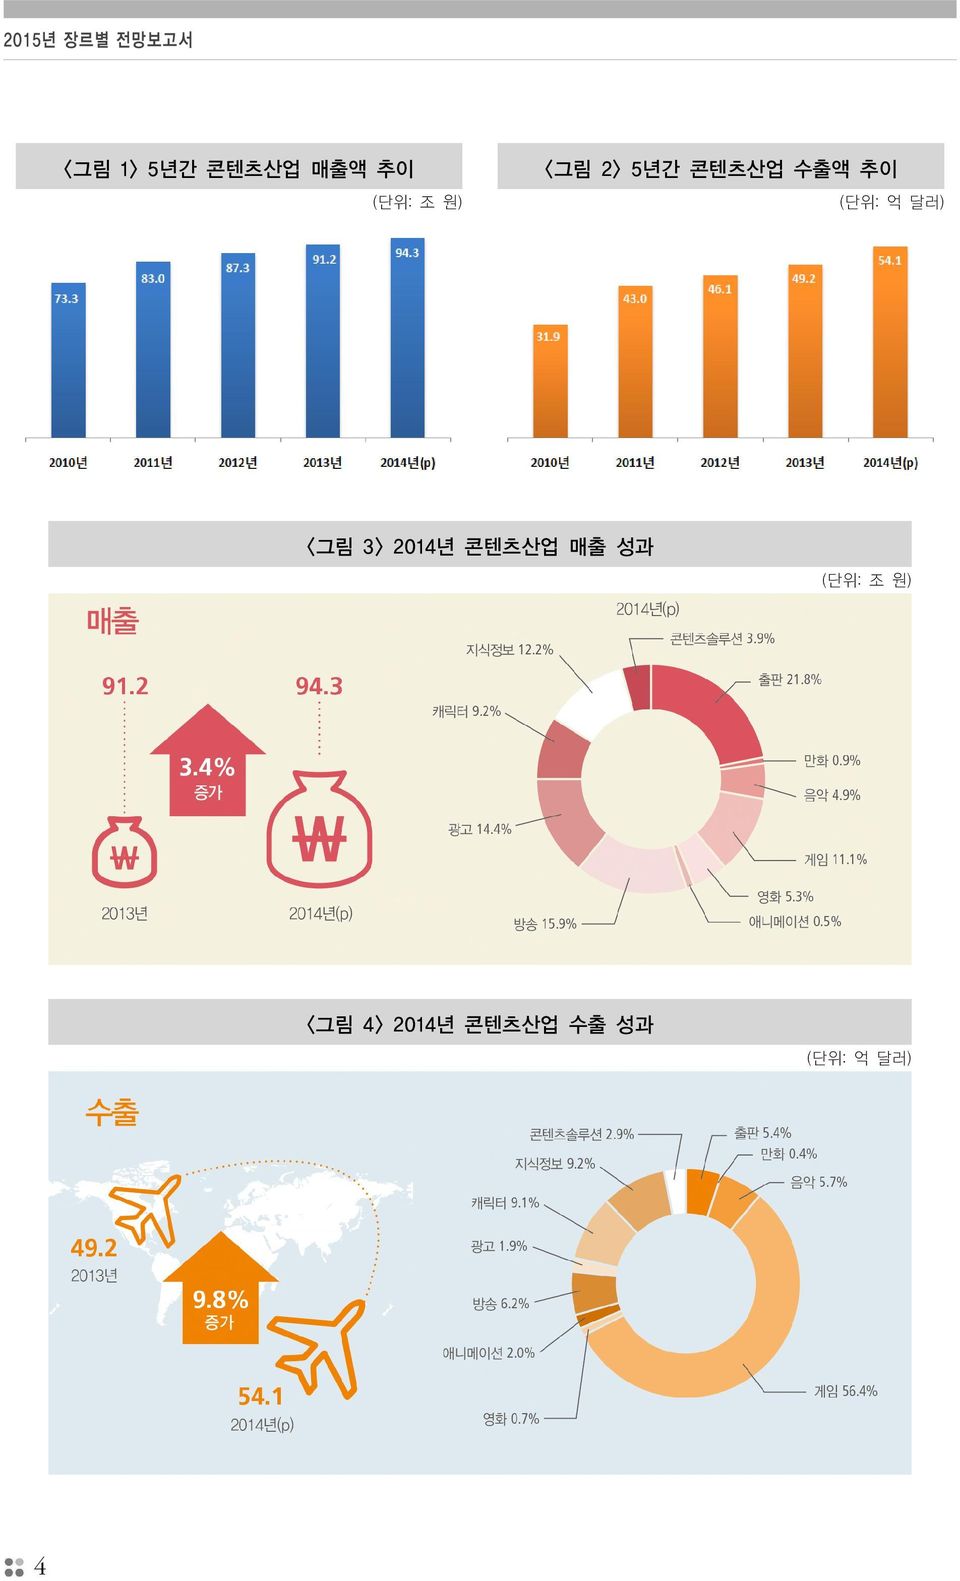 억 달러) <그림 3> 2014년 콘텐츠산업 매출 성과 (단위: 조